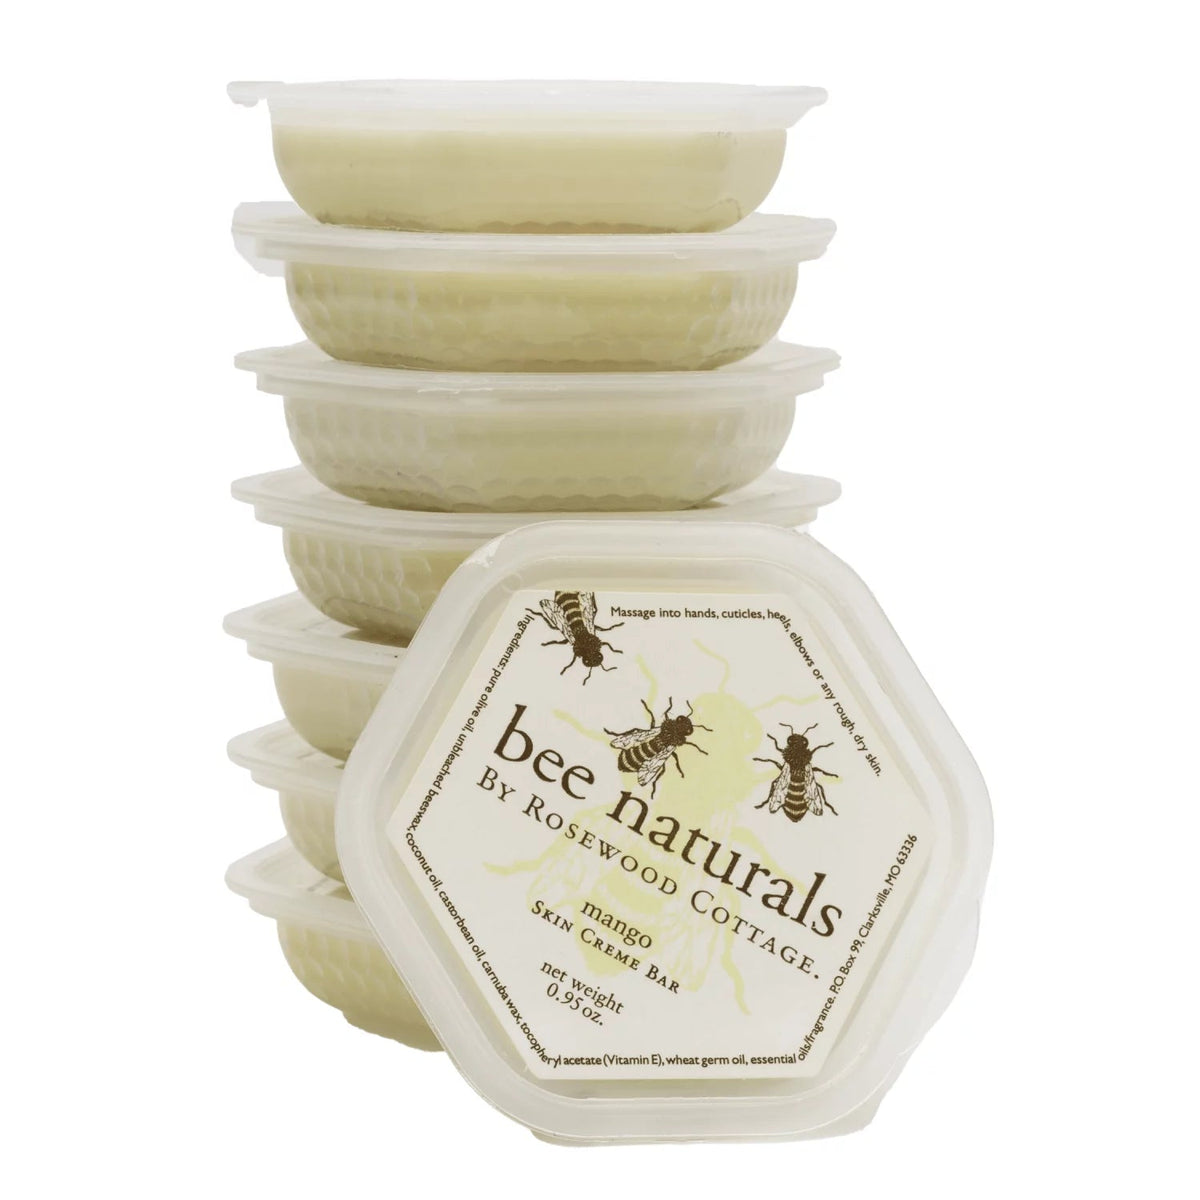 Skin Crème Bar - Bee Naturals Store